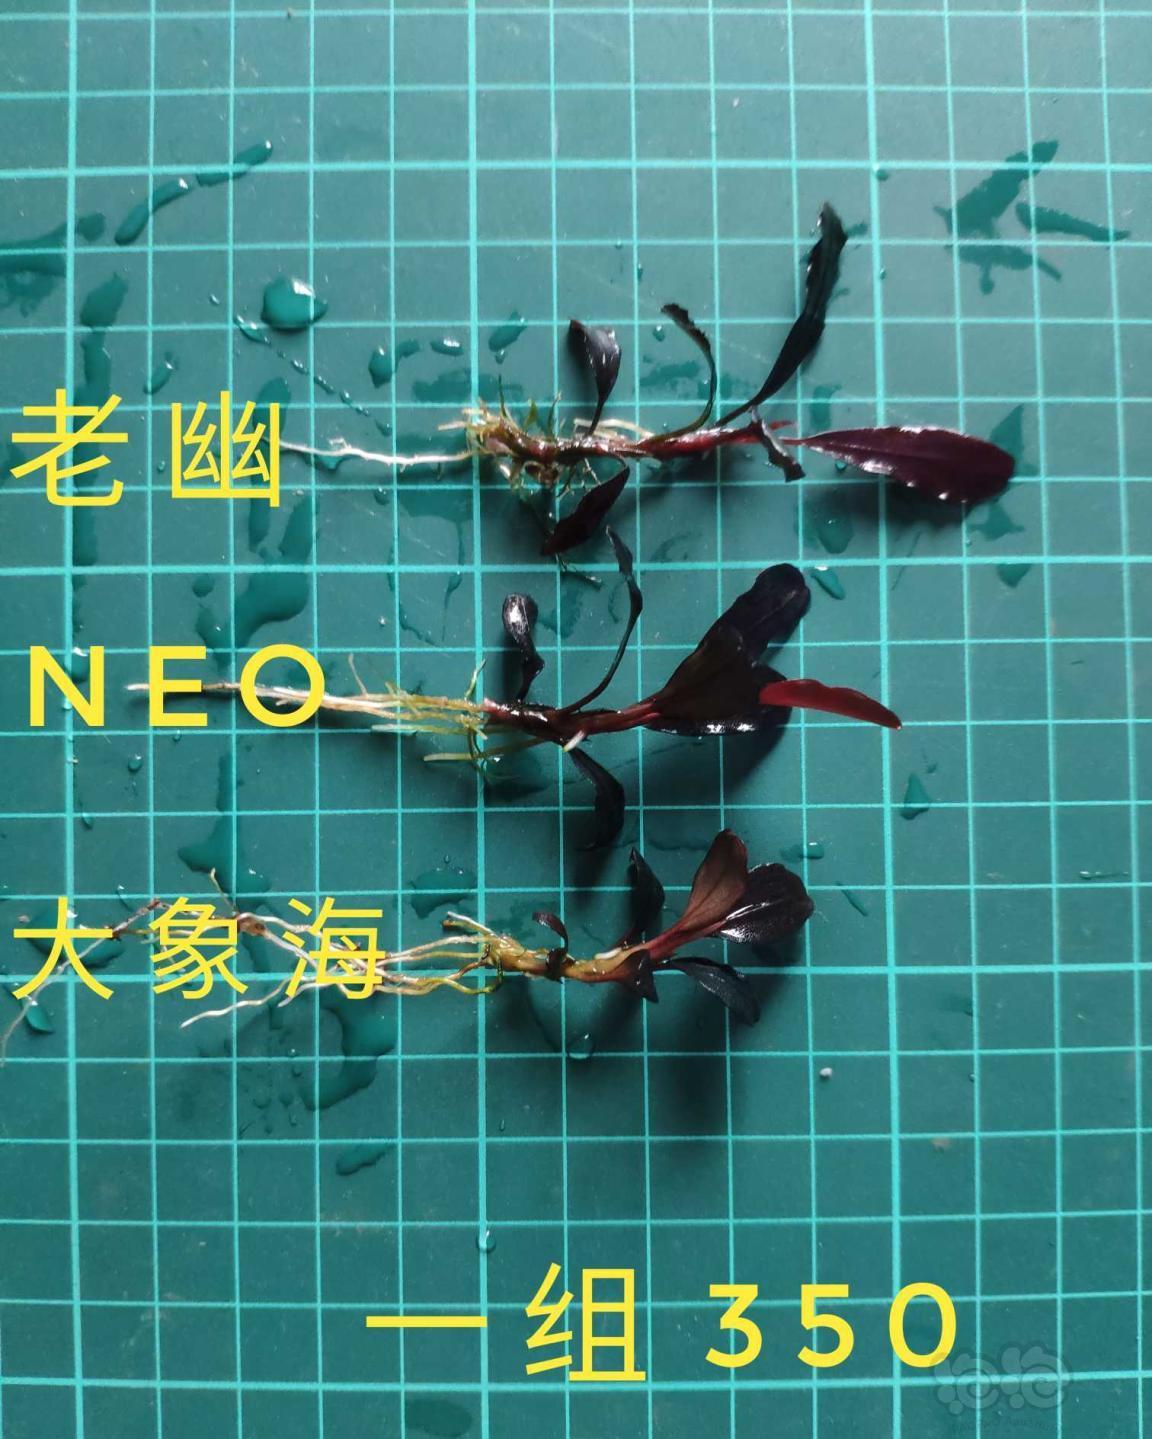 【辣椒榕】出两组辣椒榕 老幽，Neo和大象海-图4